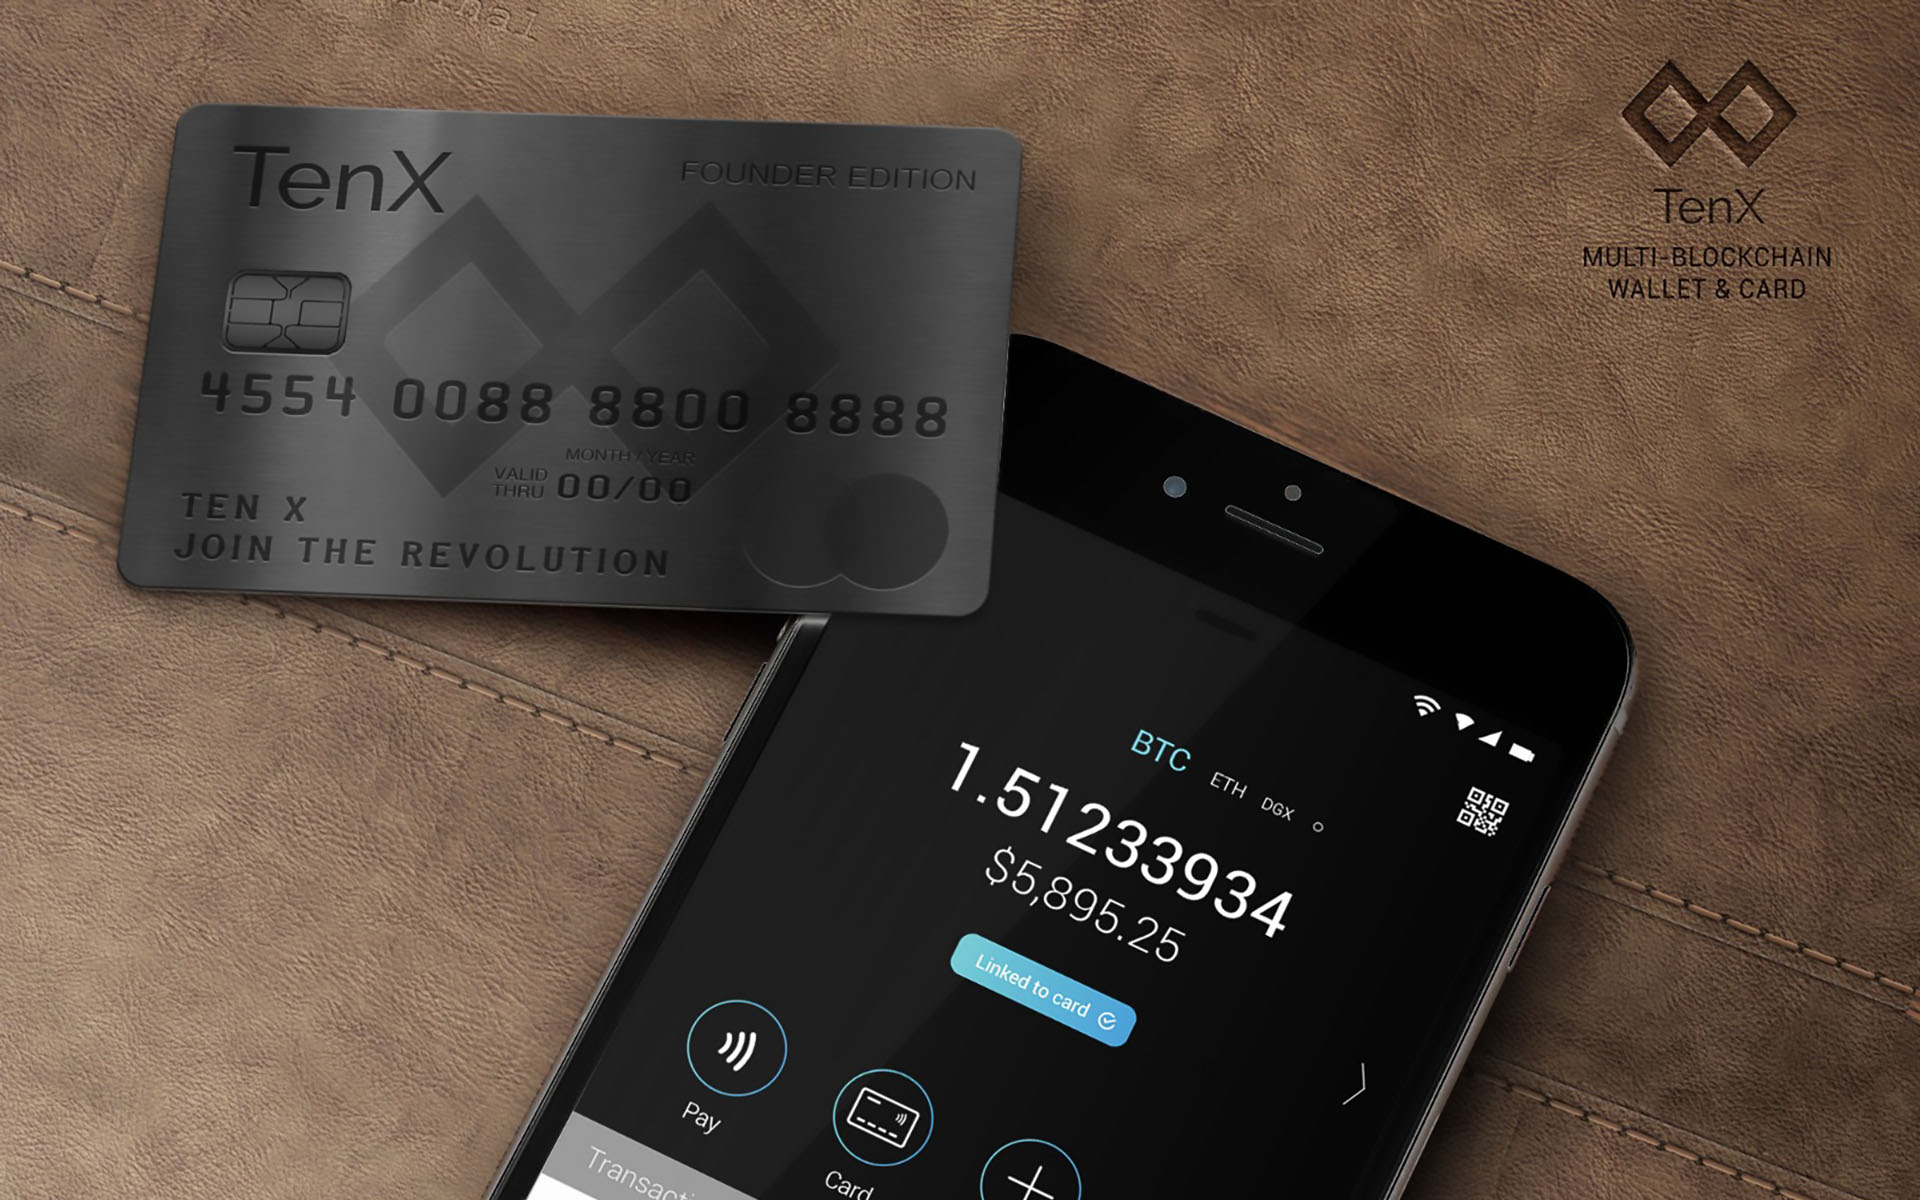 TenX raises $34 million in 7 minutes